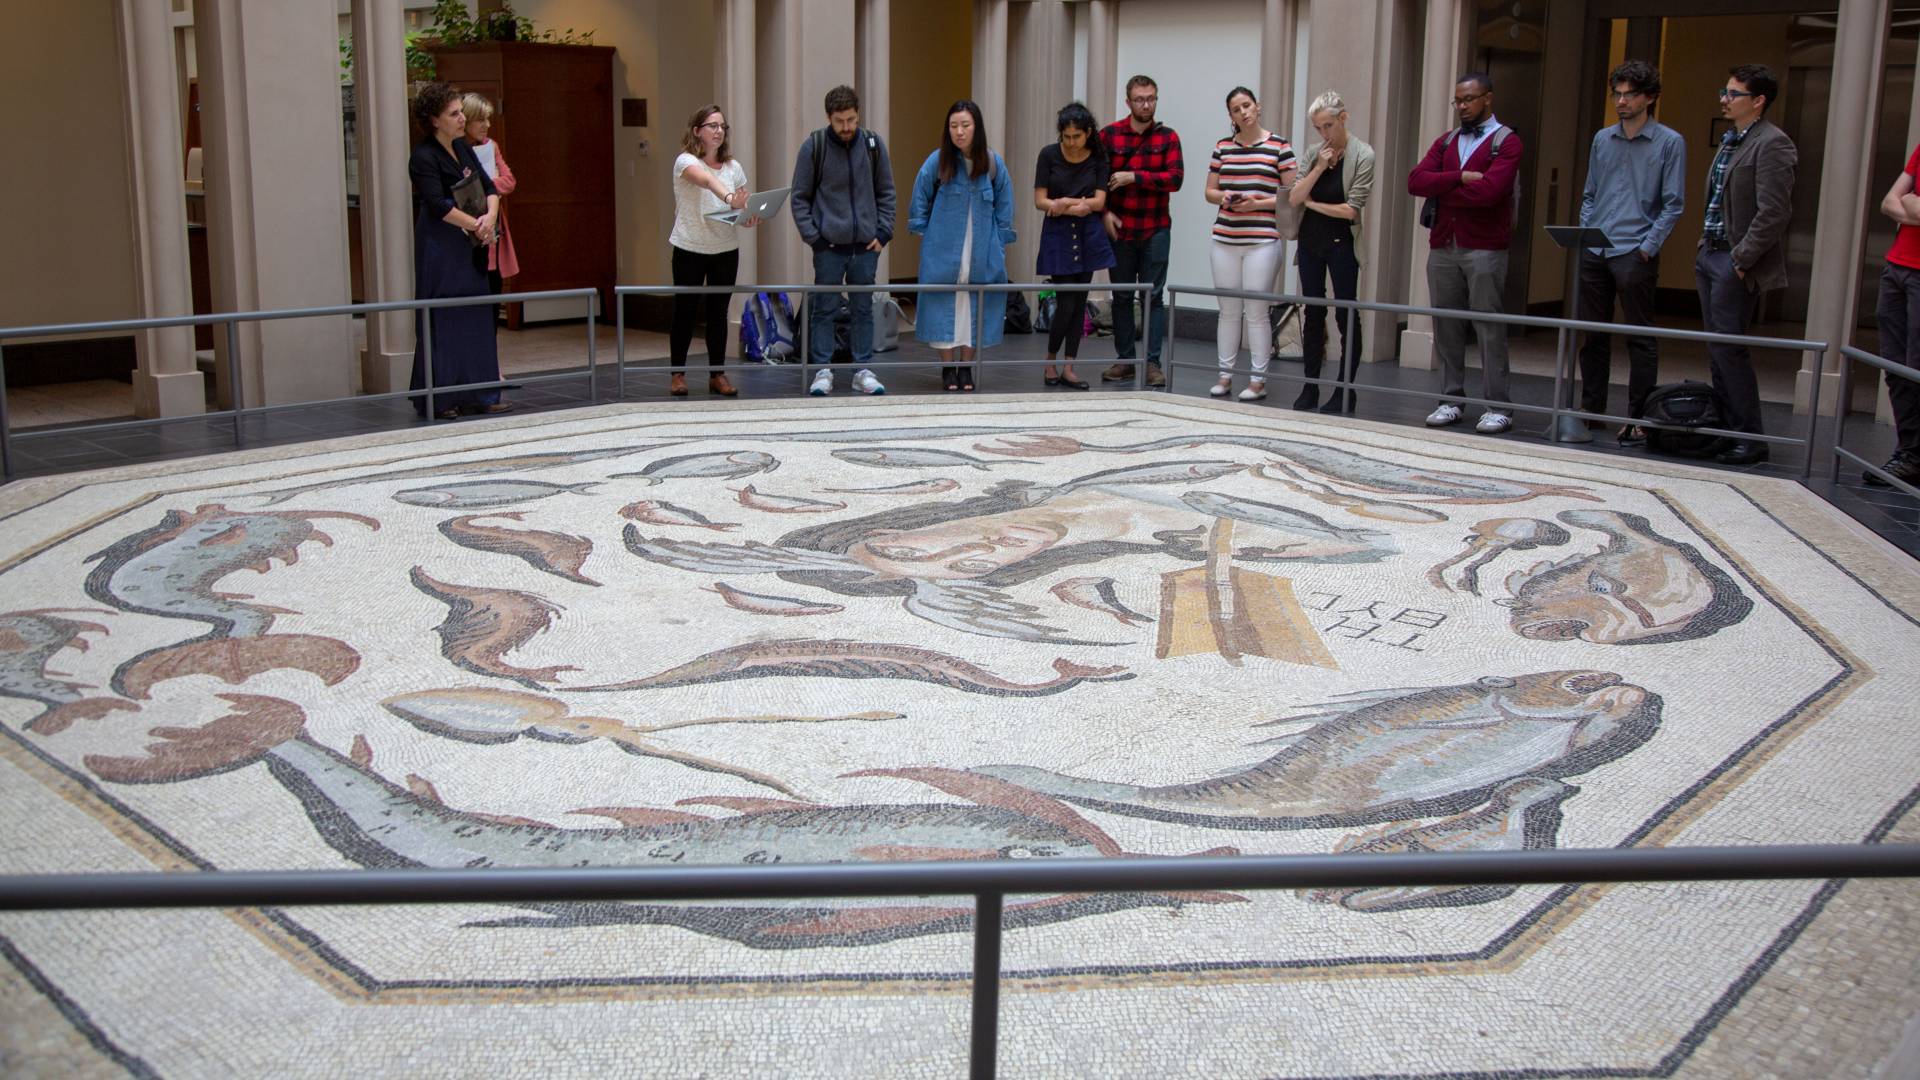 Students looking at large mosaic at Harvard museum